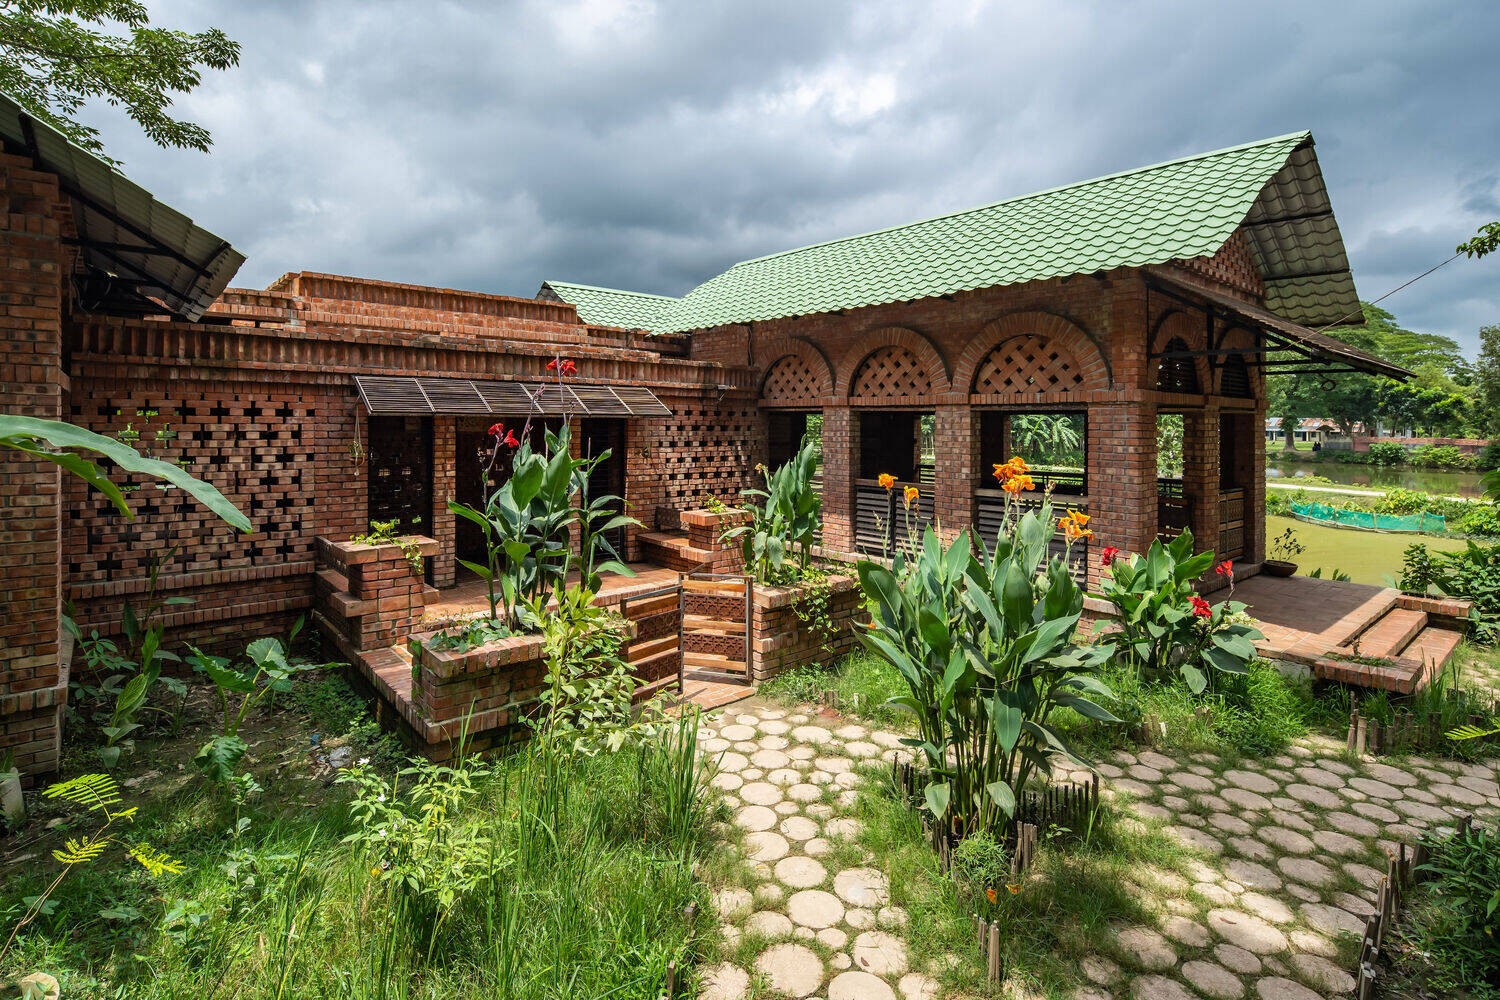 
Với thiết kế mái dốc, cửa vòm đặc trưng ngôi nhà là một công trình mang phong cách nhà thờ Hồi giáo
